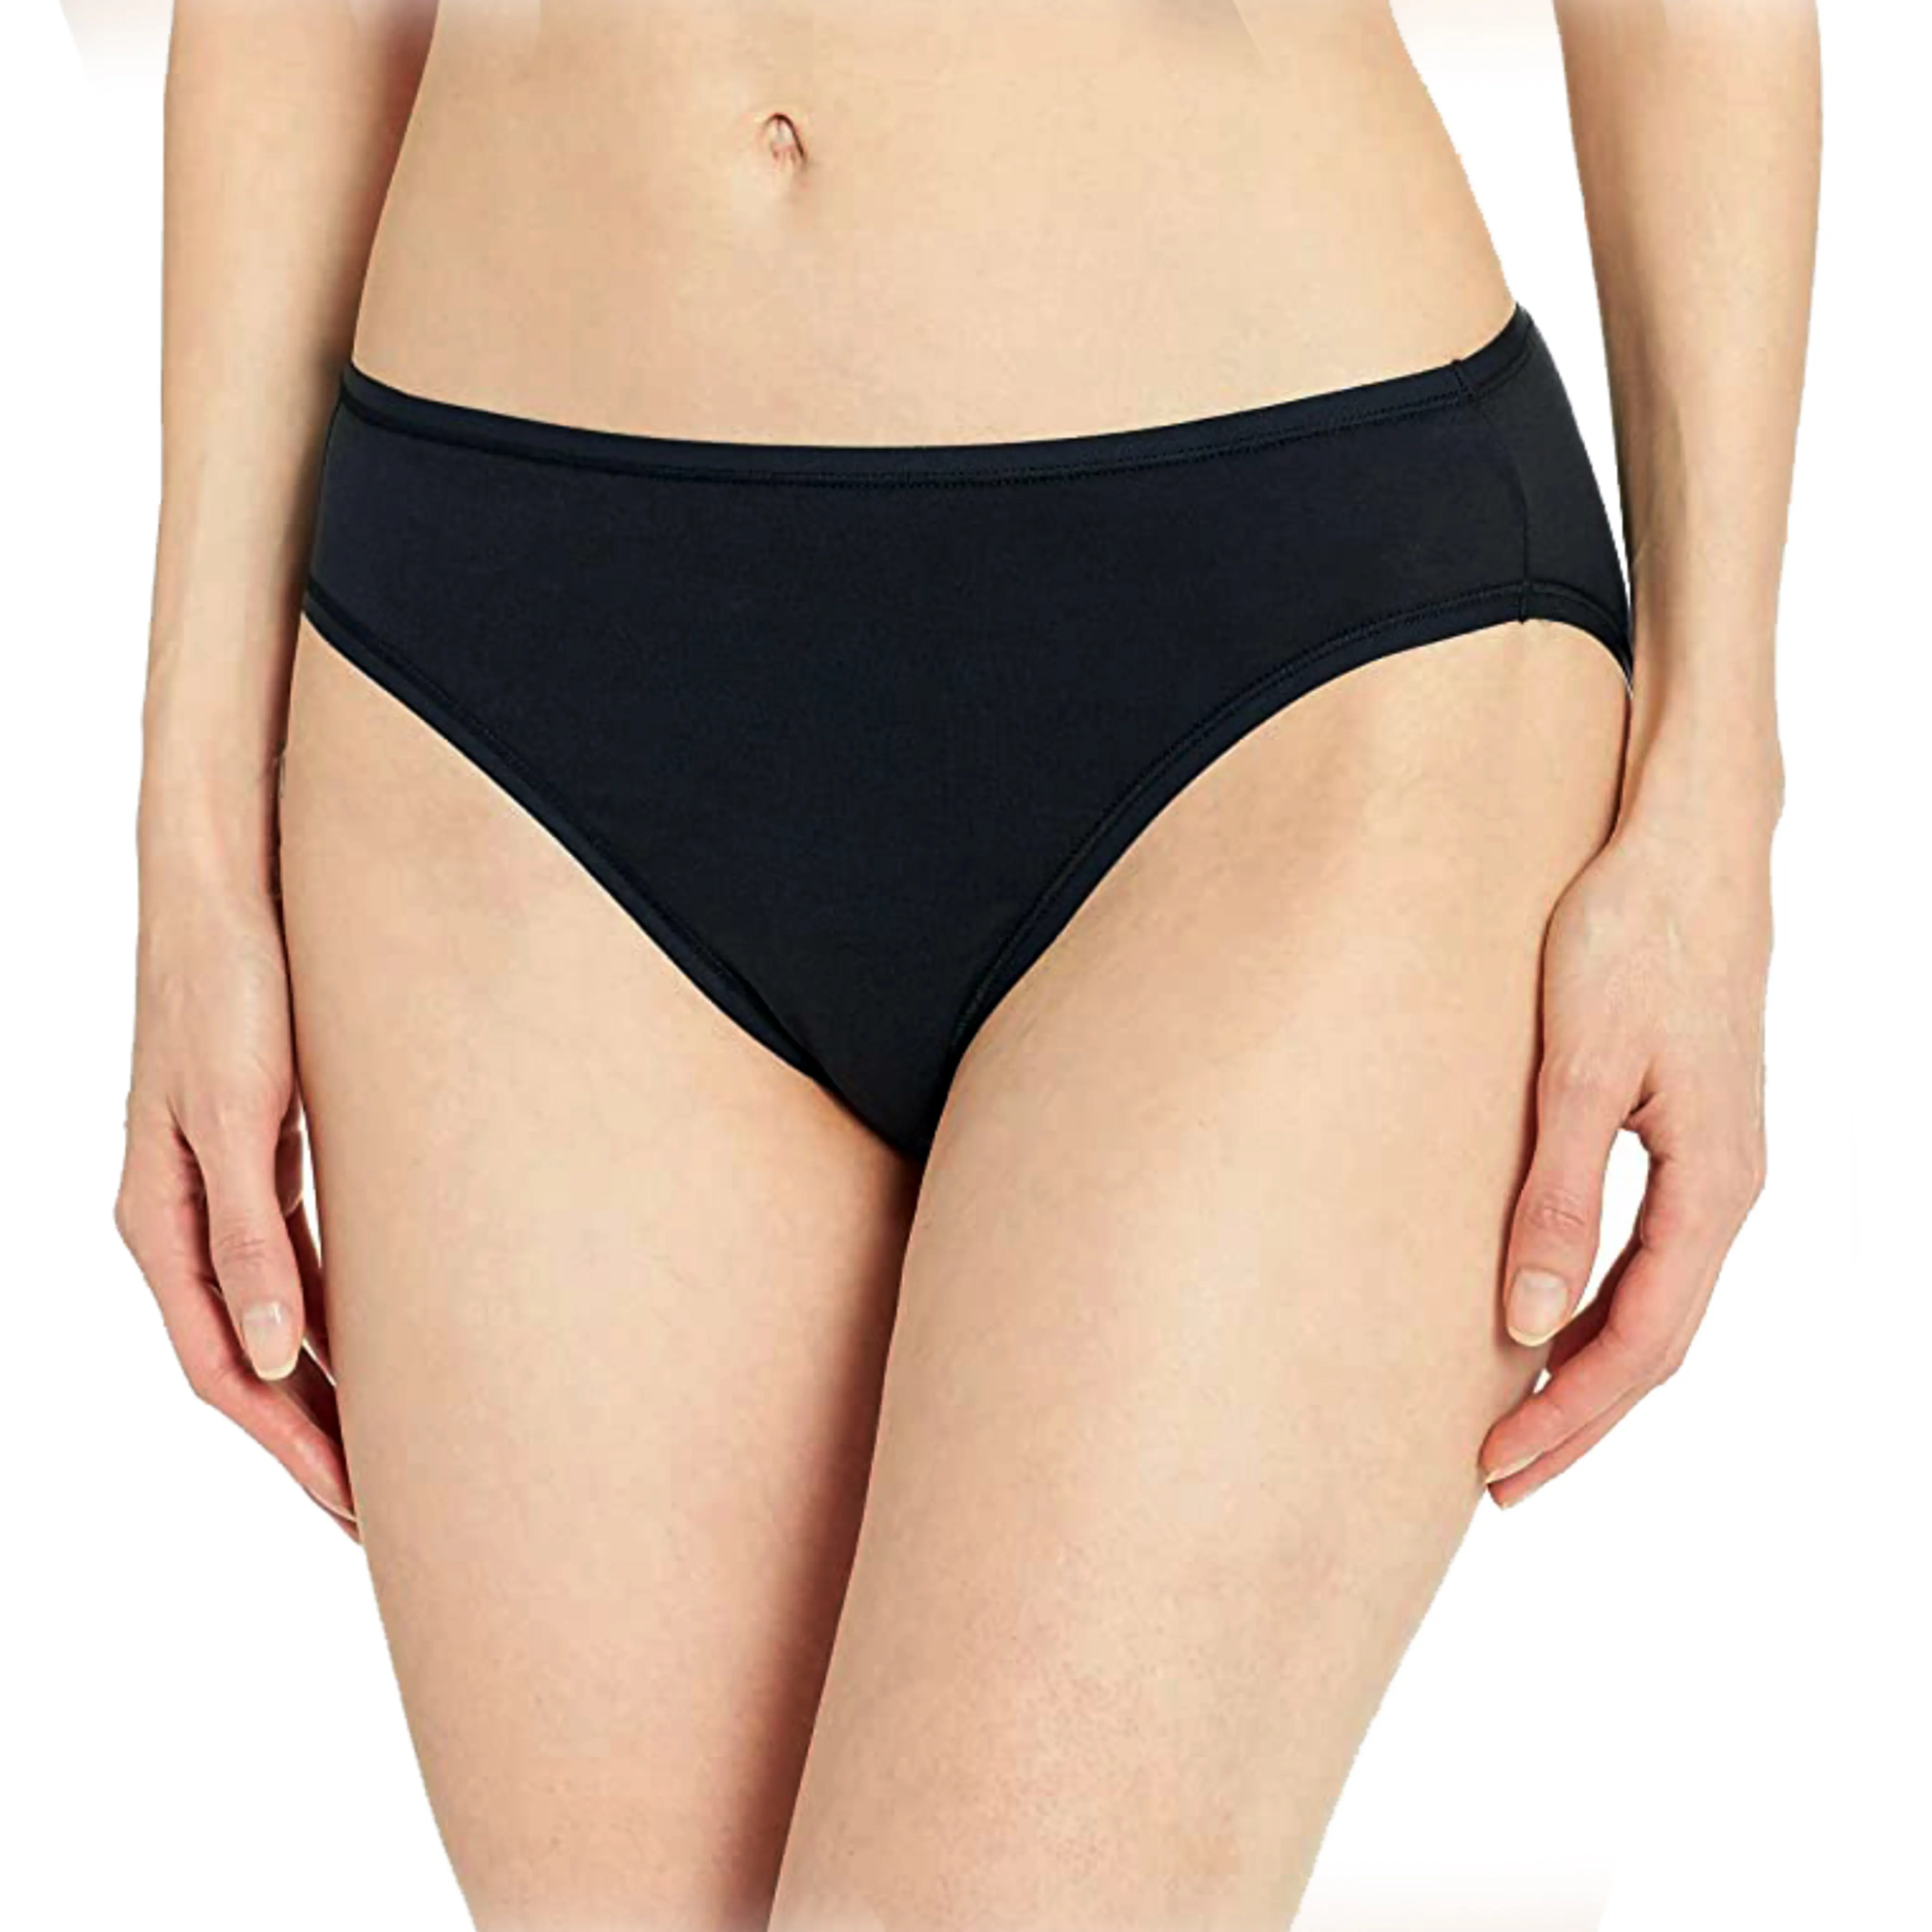 Baumwolle Unterwäsche für Frauen Bikini Höschen Weiche Unterhose Atmungsaktive Damen Höschen Flexibler Bikini Für Frauen Bulk Niedriger Preis